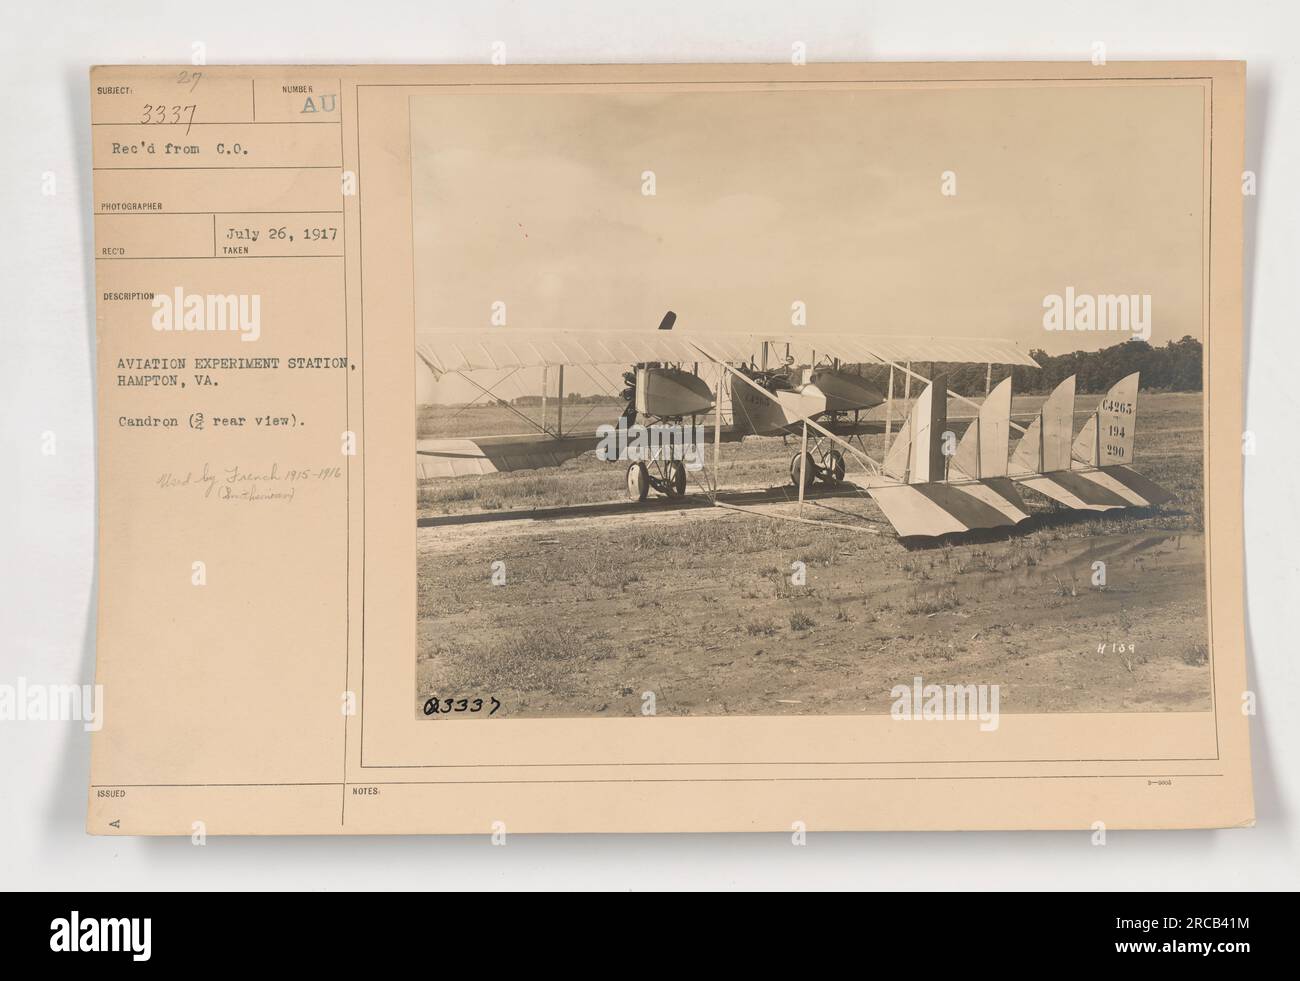 Die Abbildung zeigt eine 3/4-Rückansicht eines Caudron-Flugzeugs an der Aviation Experiment Station in Hampton, Virginia. Der Caudron wurde von den Franzosen zwischen 1915 und 1916 benutzt. Das Foto wurde an einem unbekannten Datum aufgenommen und ging am 26. Juli 1917 ein. Die Beschreibungsnummer lautet 3337 und wurde am 9. Oktober ausgestellt. Stockfoto